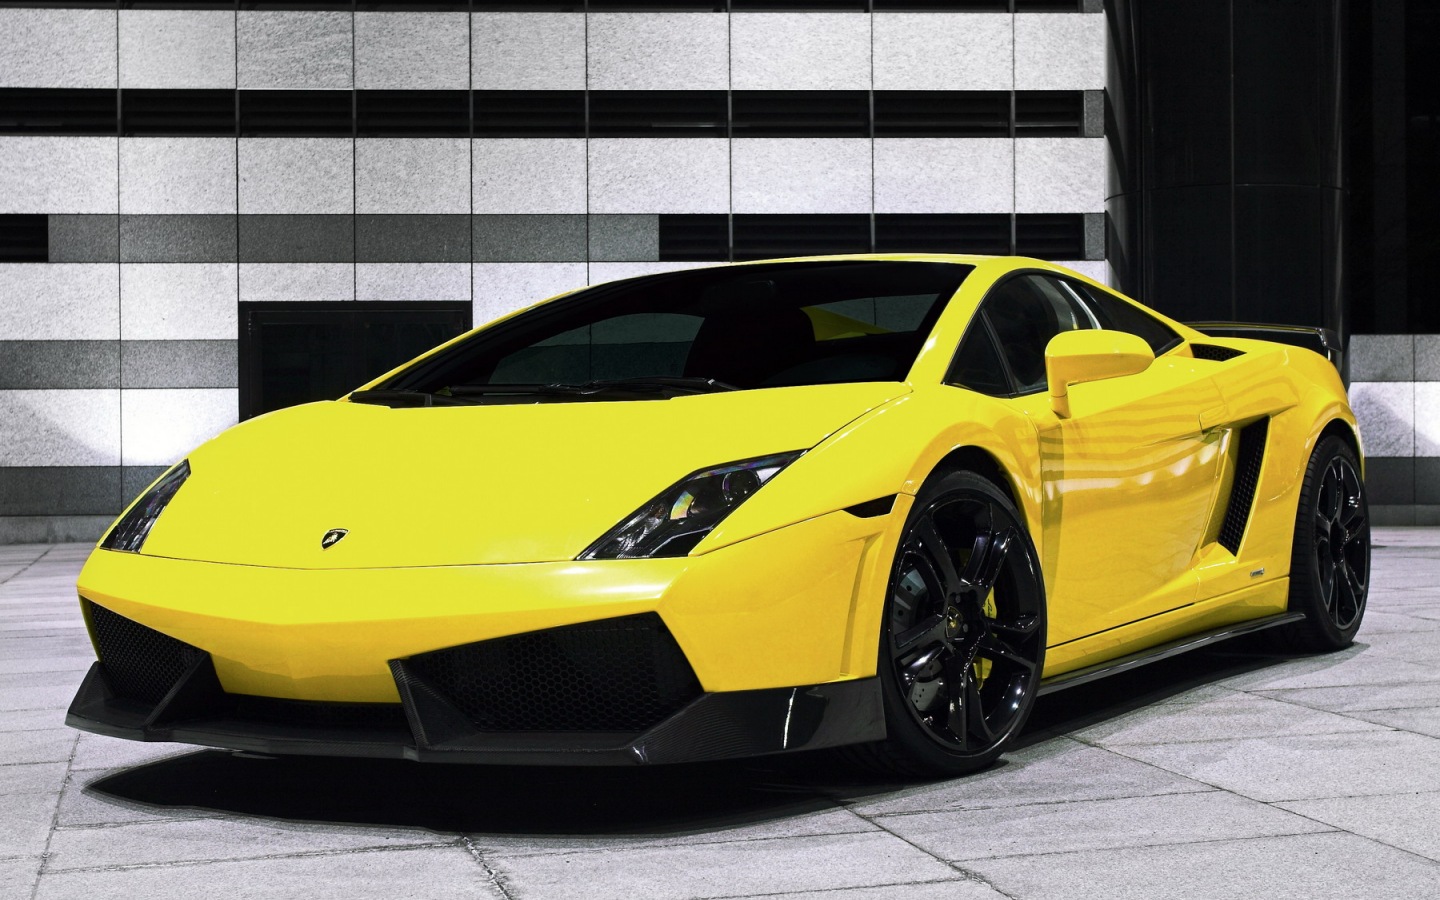 Free download TRON Lamborghini Aventador HD Widescreen Lamborghini